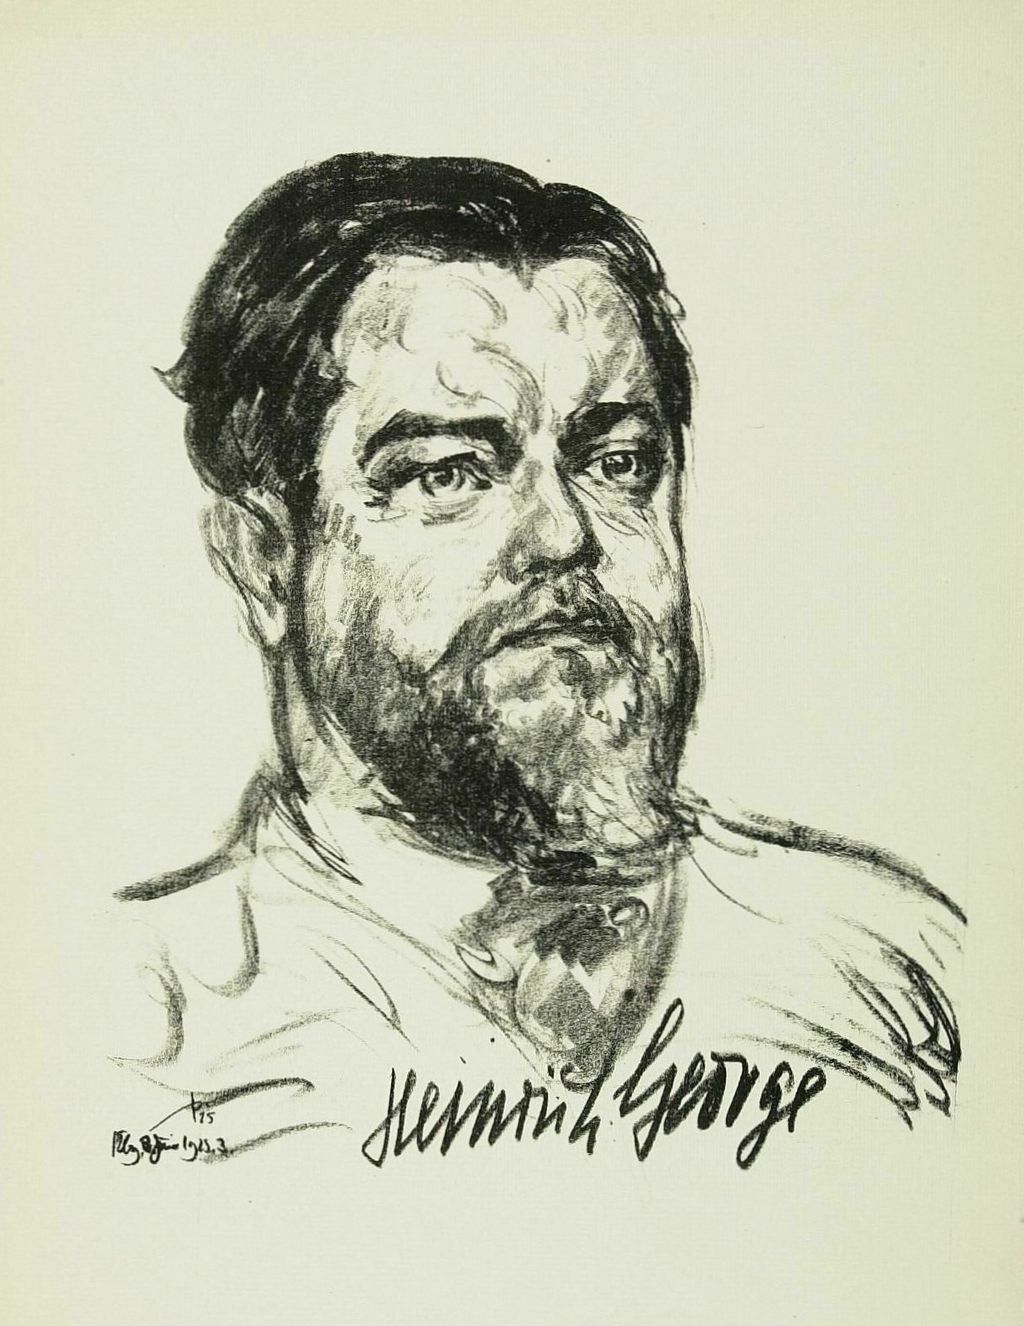 Exponat: Zeichnung: Heinrich George, 1925